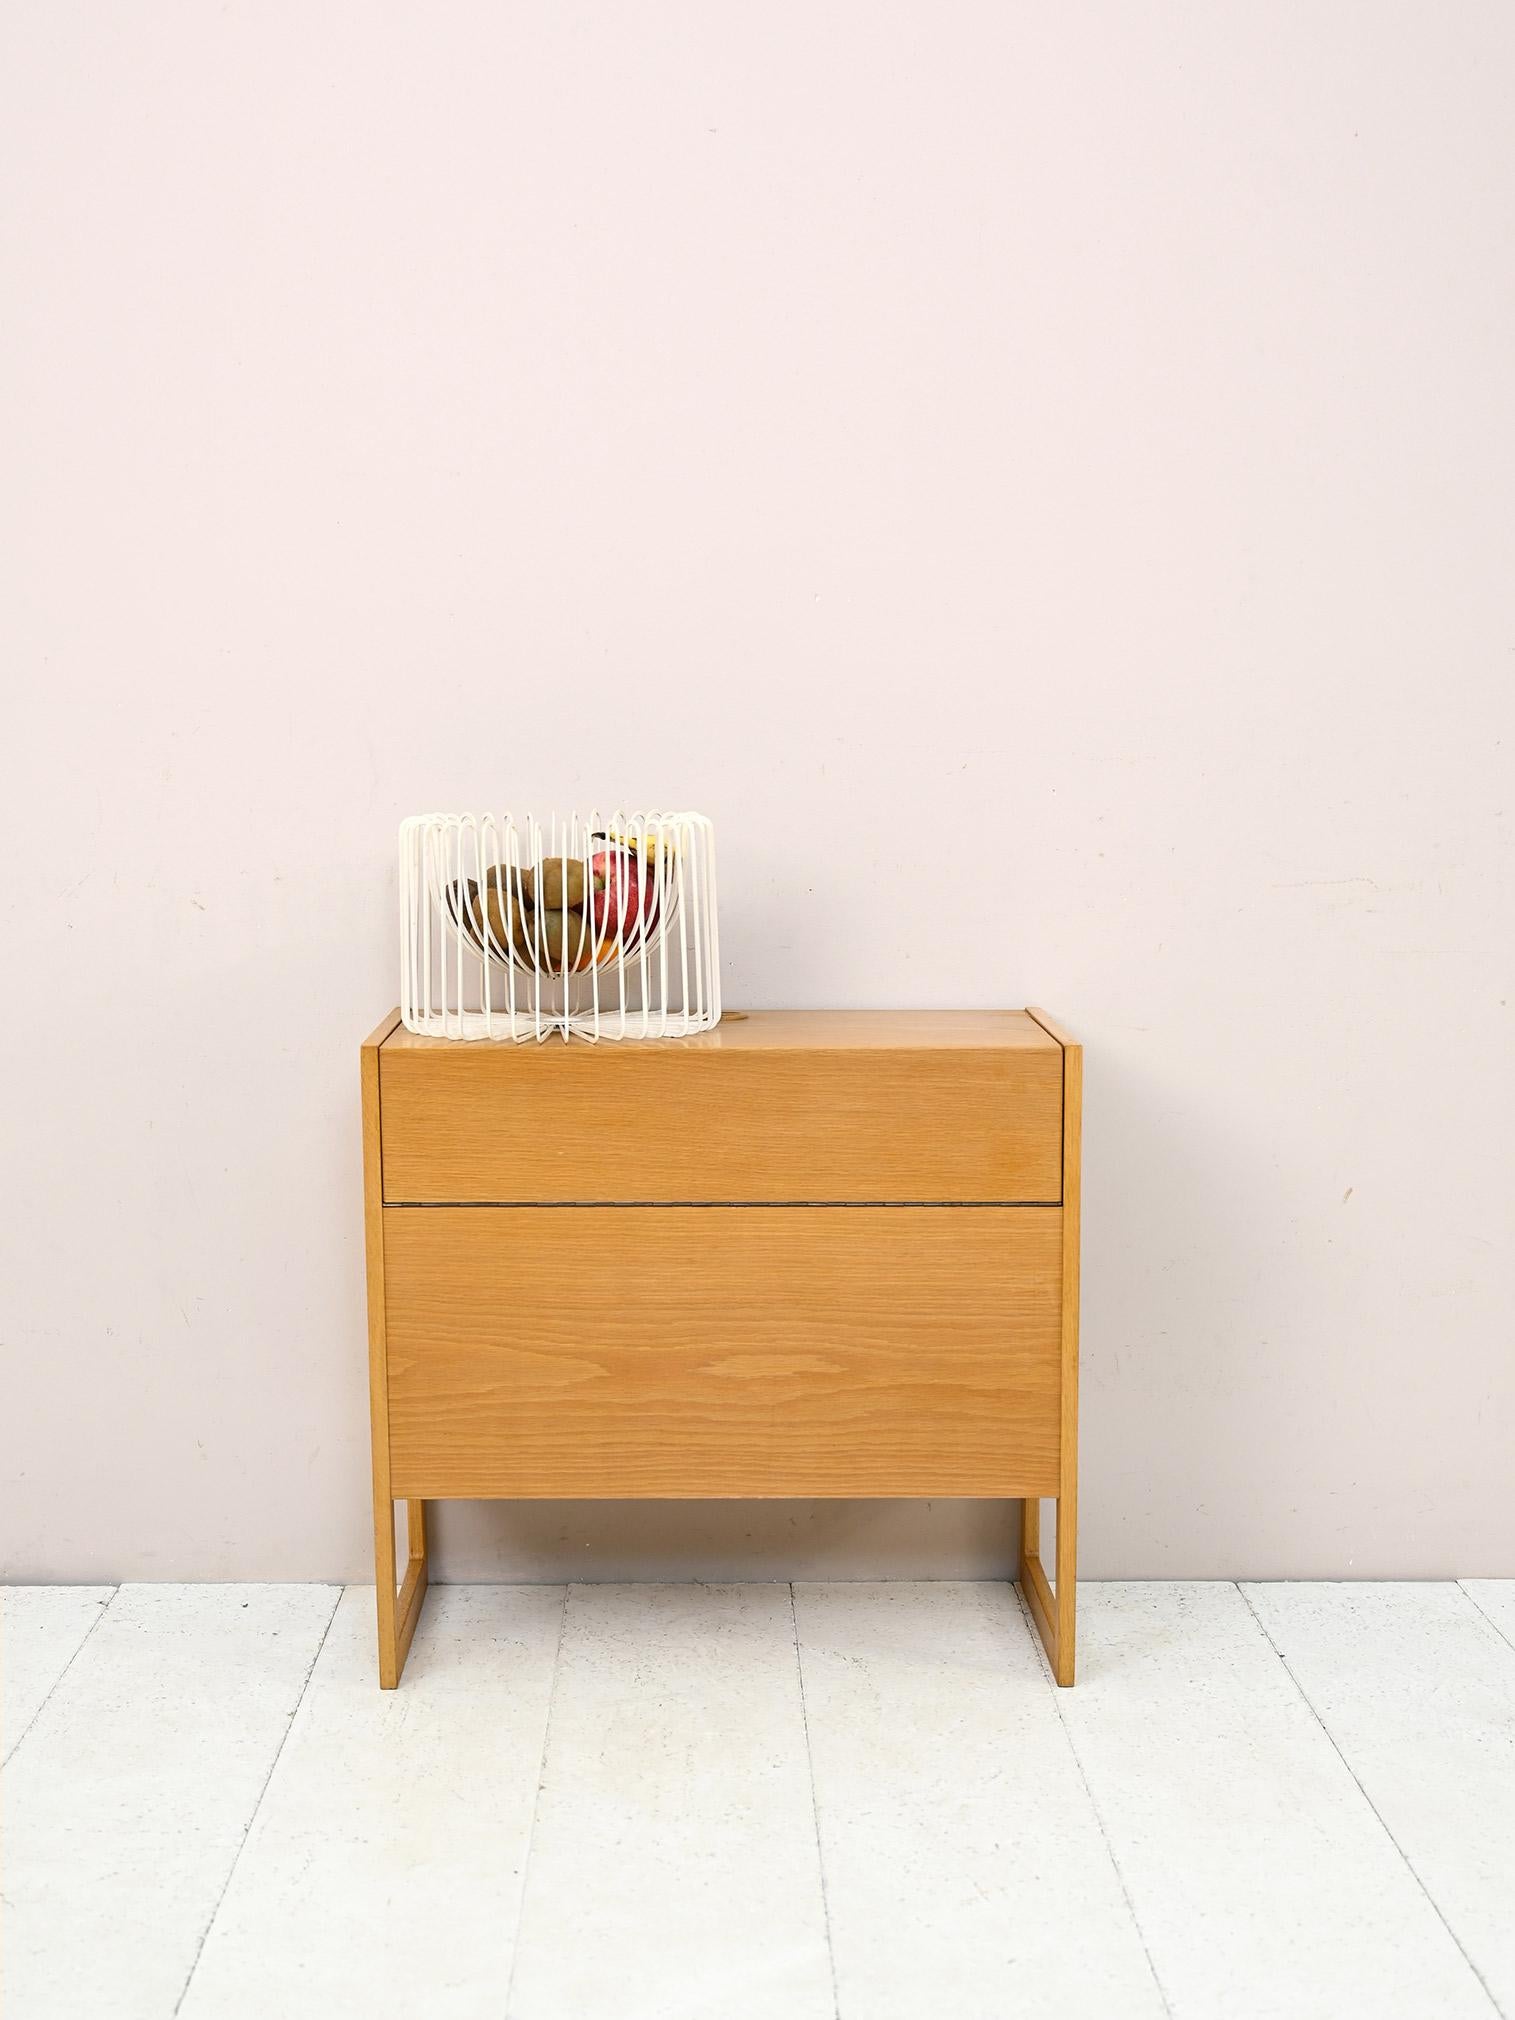 Originaler skandinavischer Eichenschrank im Vintage-Look.

Ein unverwechselbares Möbelstück, das sich durch den aufklappbaren Deckel auszeichnet. Das geräumige Innenfach eignet sich ideal als Barschrank oder als Truhe zur Aufbewahrung von